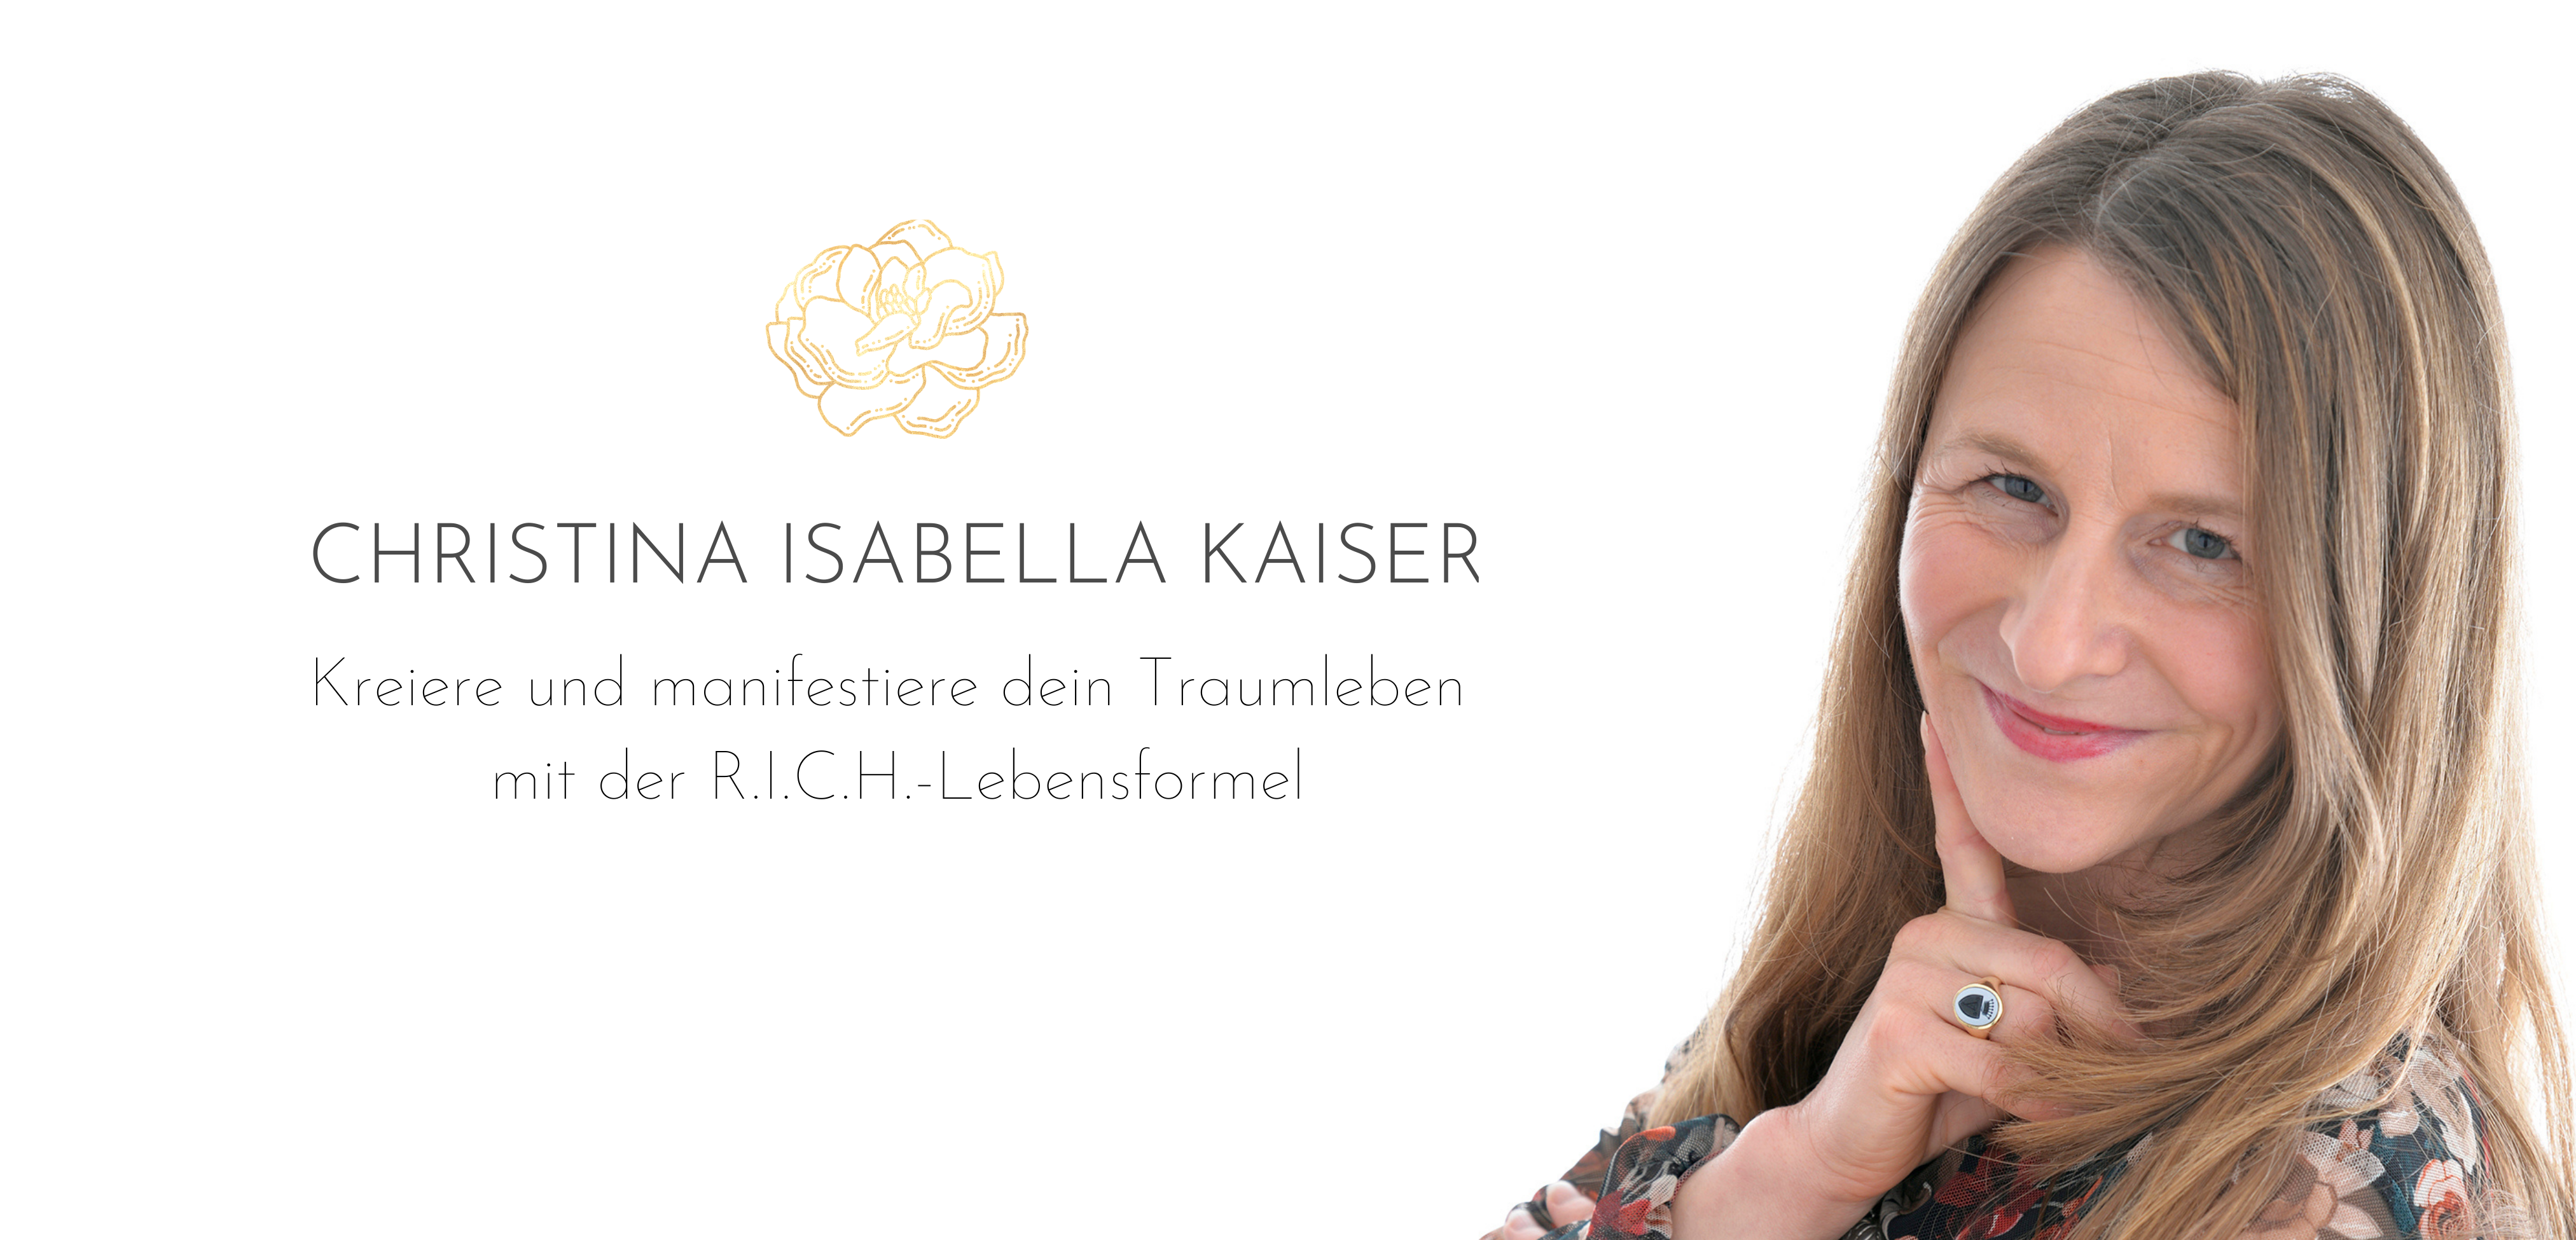 Christina Isabella Kaiser - Kreiere und manifestiere dein Traumleben